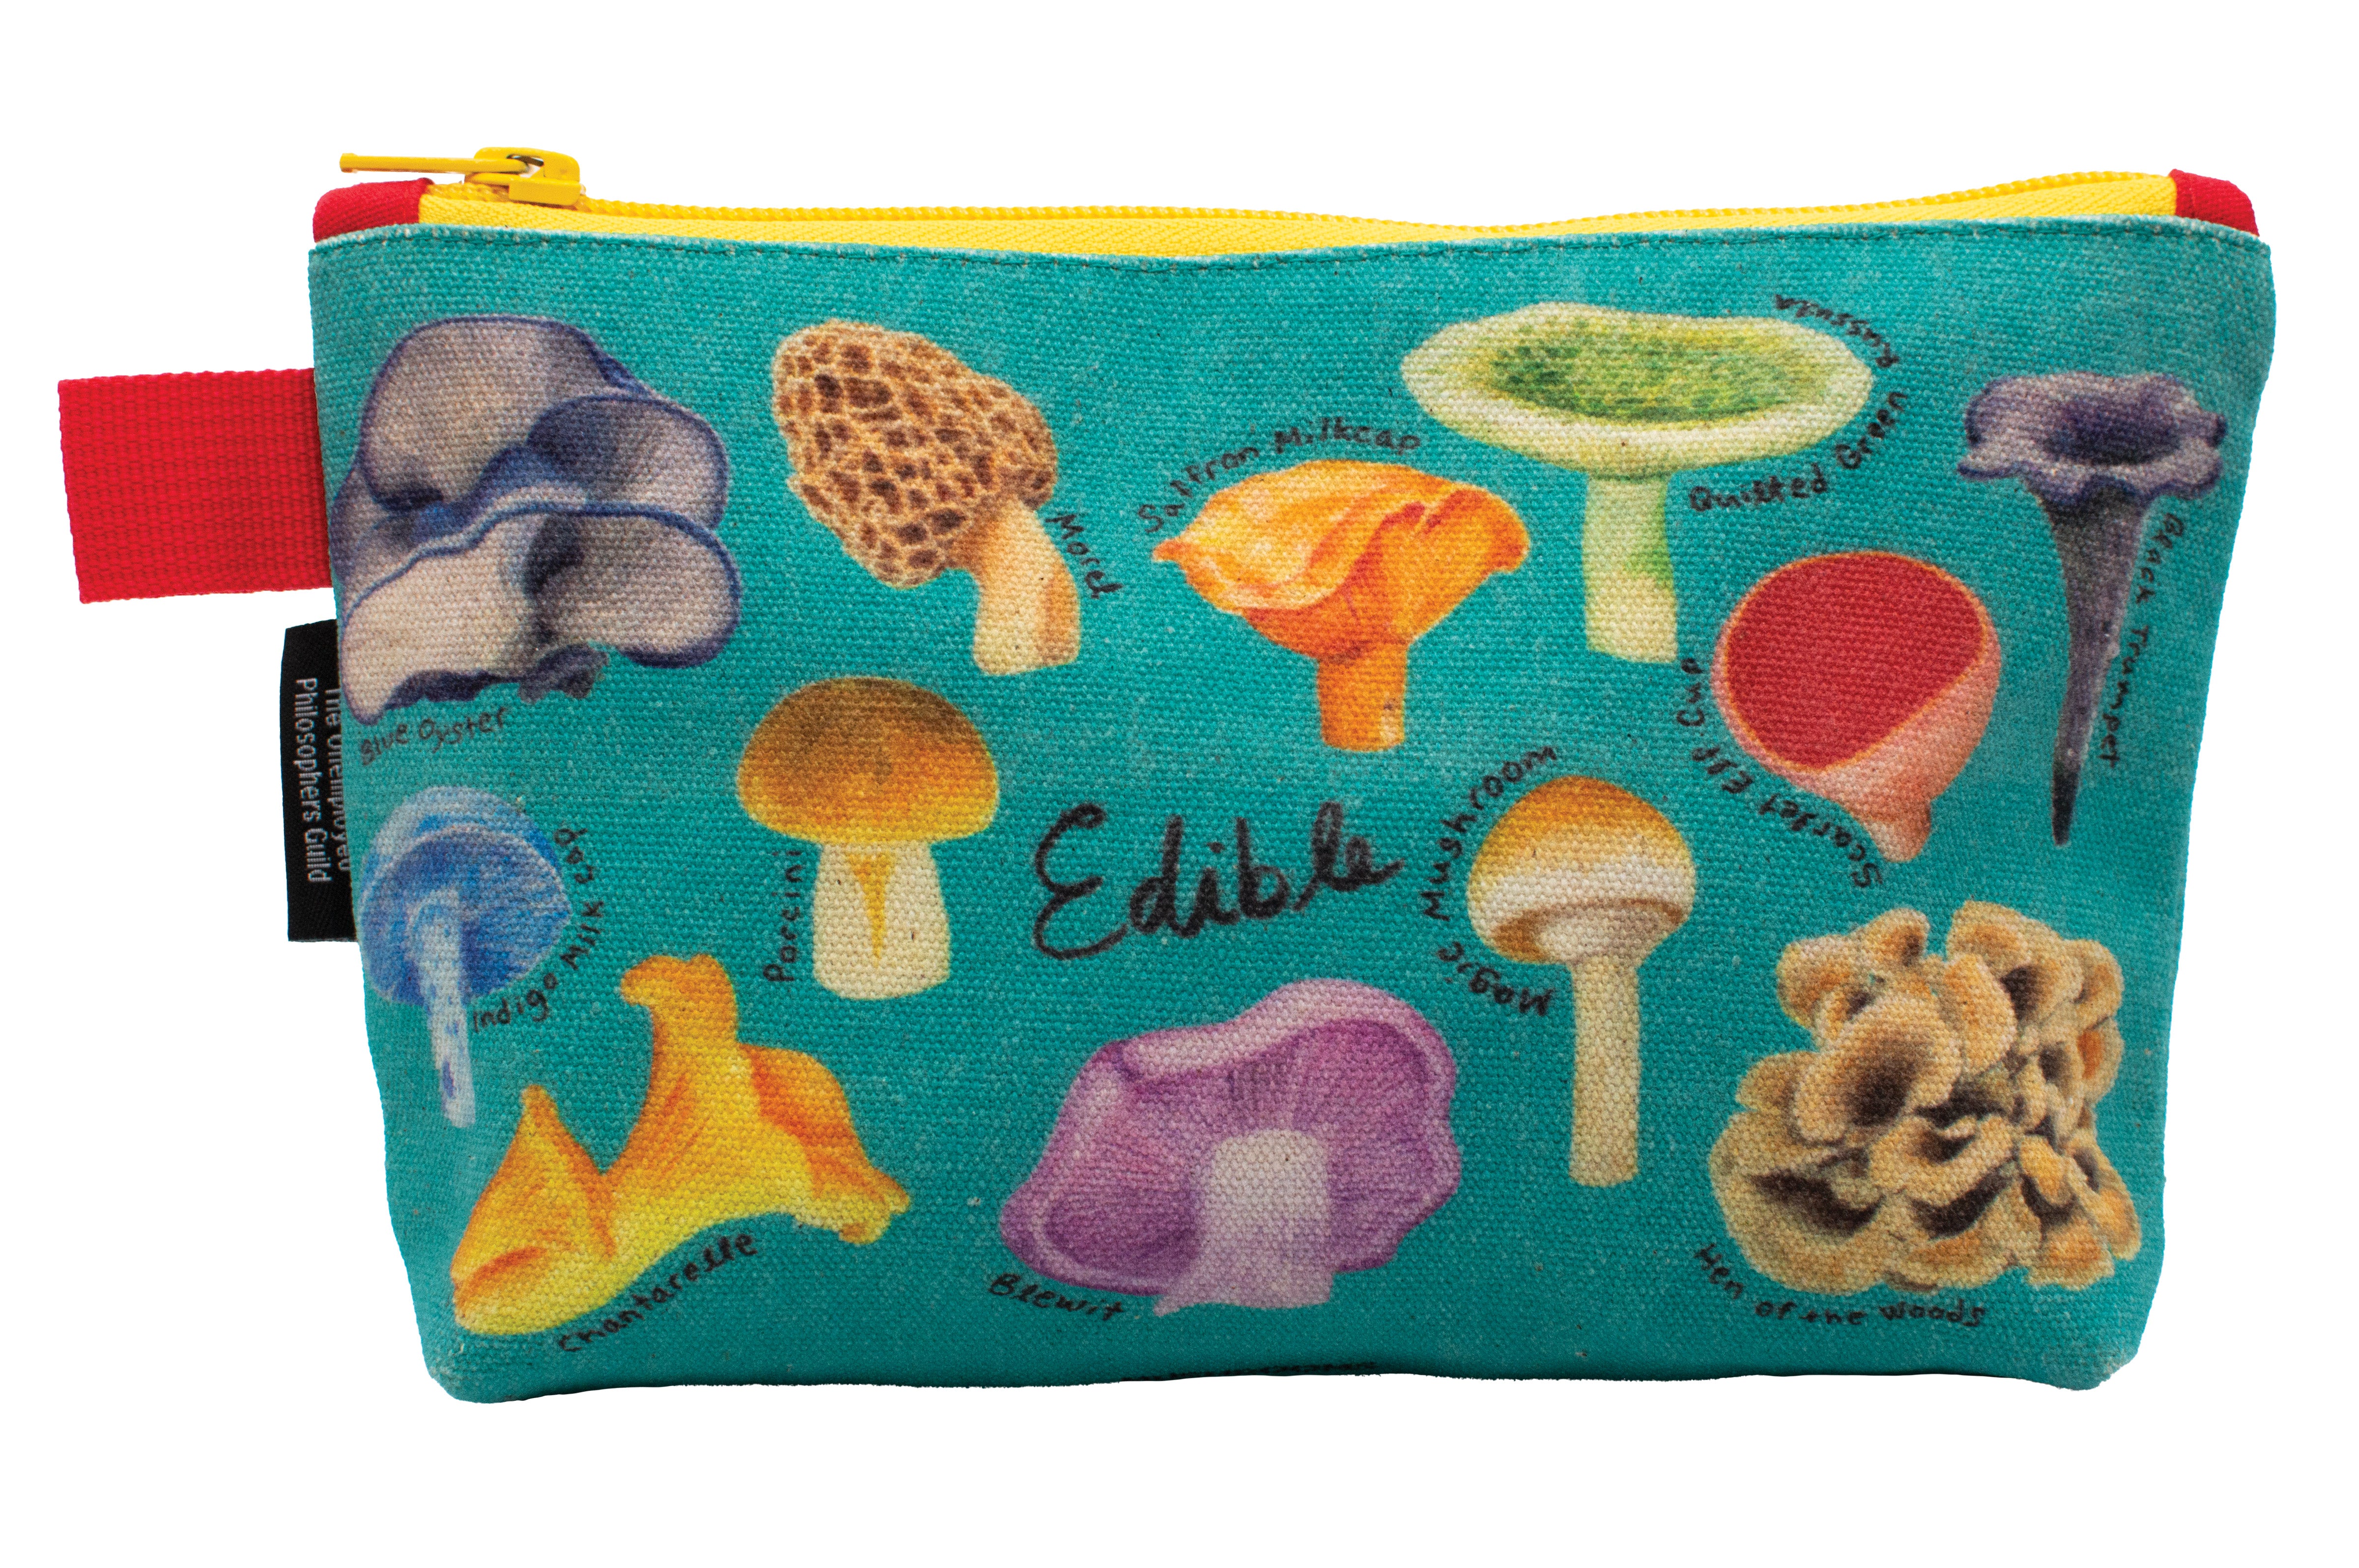 Free Cute Mushrooms Bag Crochet Pattern by Divine Debris